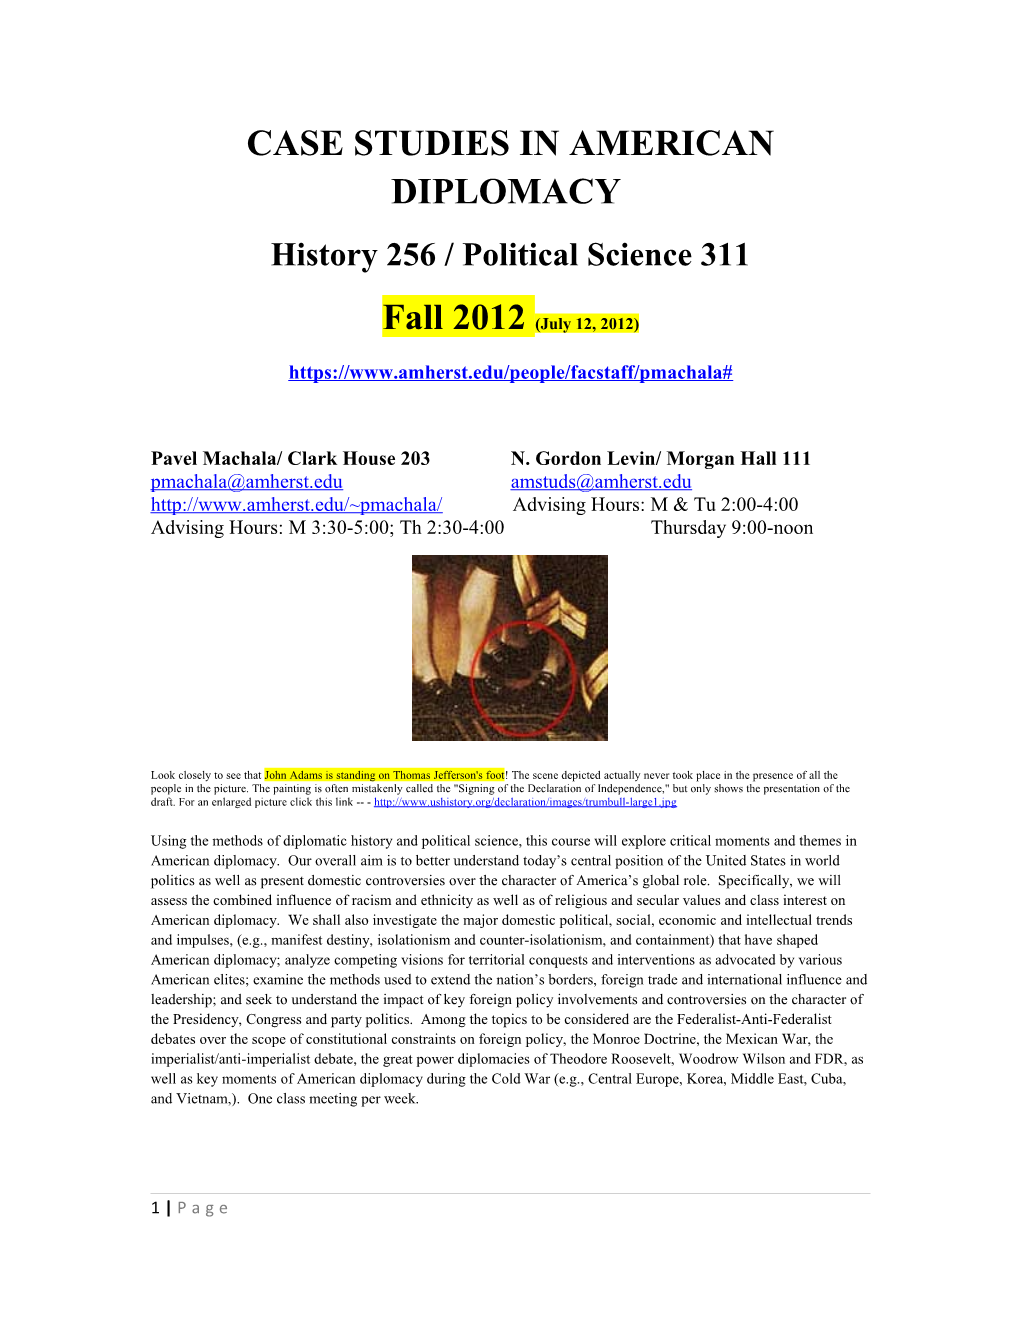 Case Studies in American Diplomacy